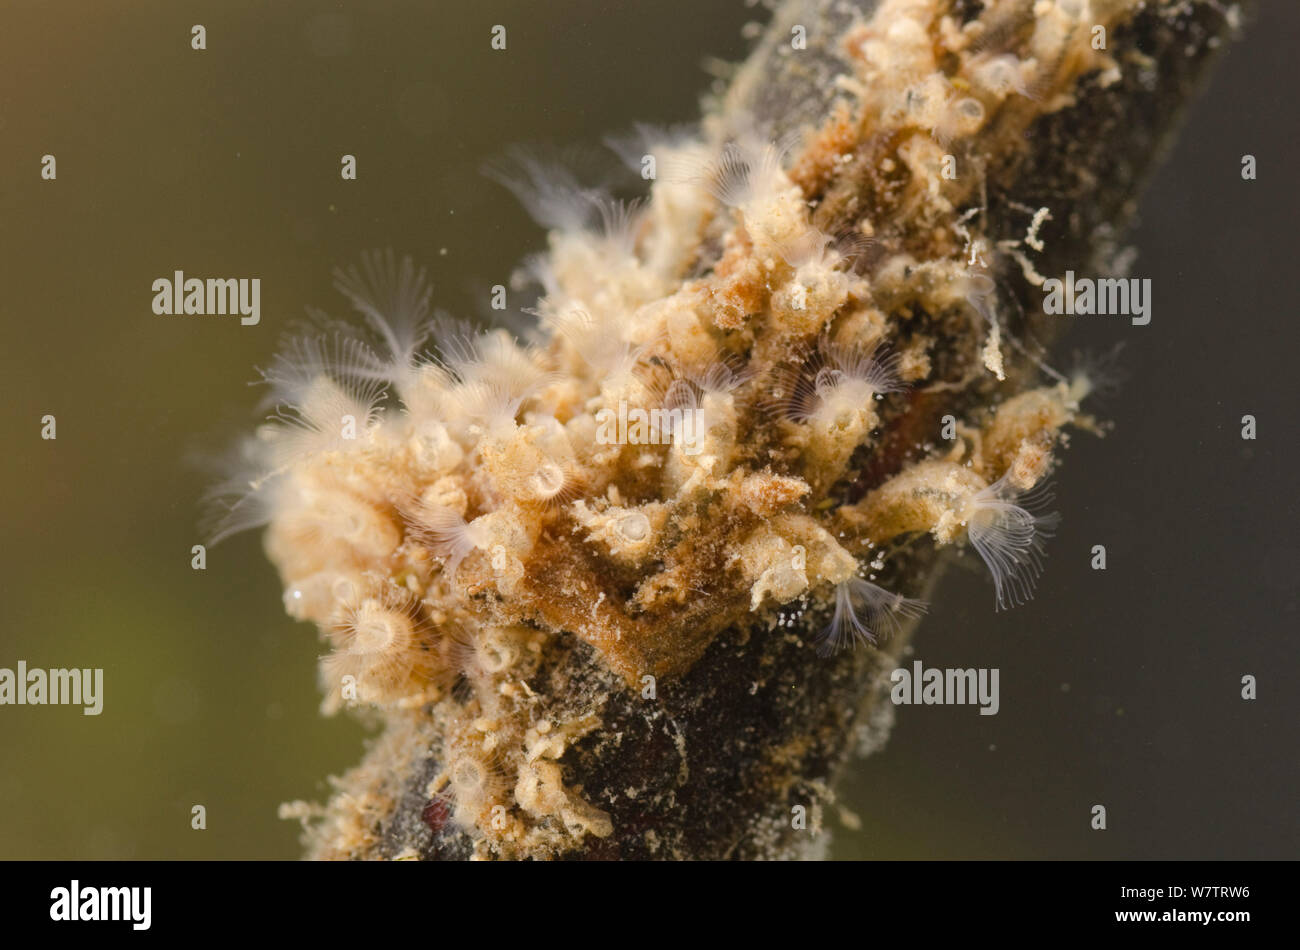 Di acqua dolce (Bryozoan Plumatella repens) colonia di zooids attaccato a una radice, Europa, Luglio, condizioni controllate Foto Stock